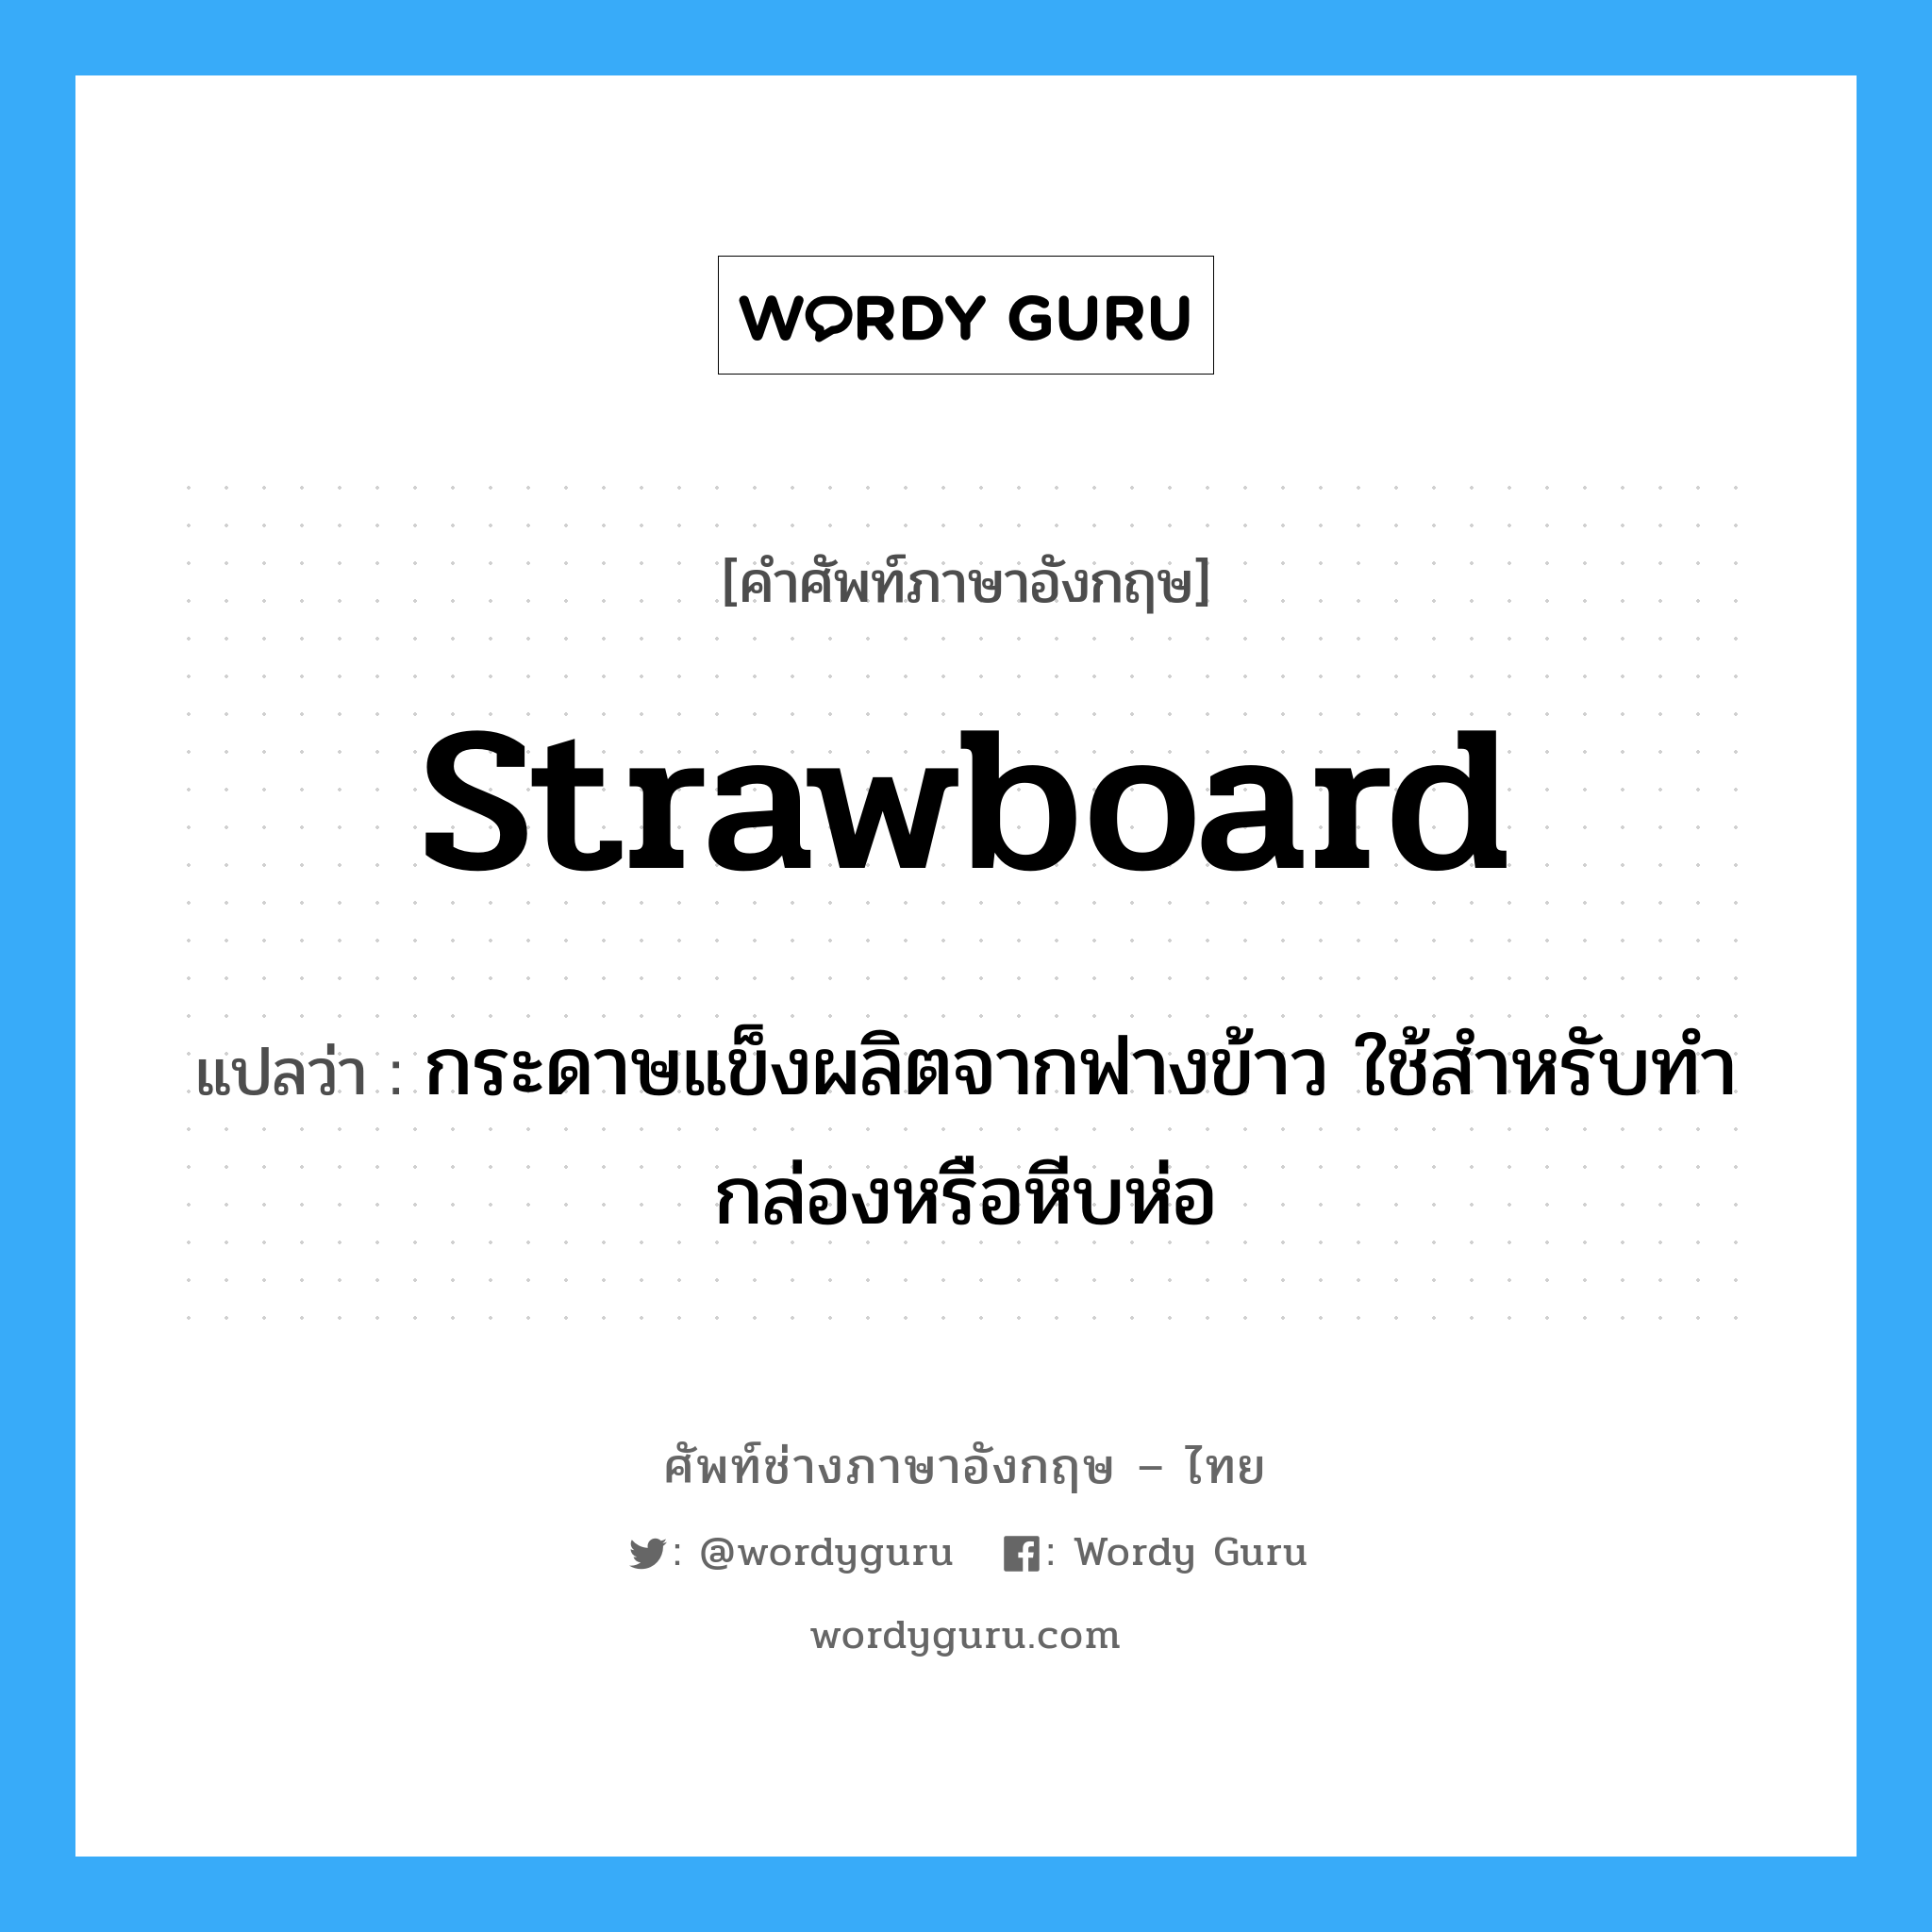 strawboard แปลว่า?, คำศัพท์ช่างภาษาอังกฤษ - ไทย strawboard คำศัพท์ภาษาอังกฤษ strawboard แปลว่า กระดาษแข็งผลิตจากฟางข้าว ใช้สำหรับทำกล่องหรือหีบห่อ